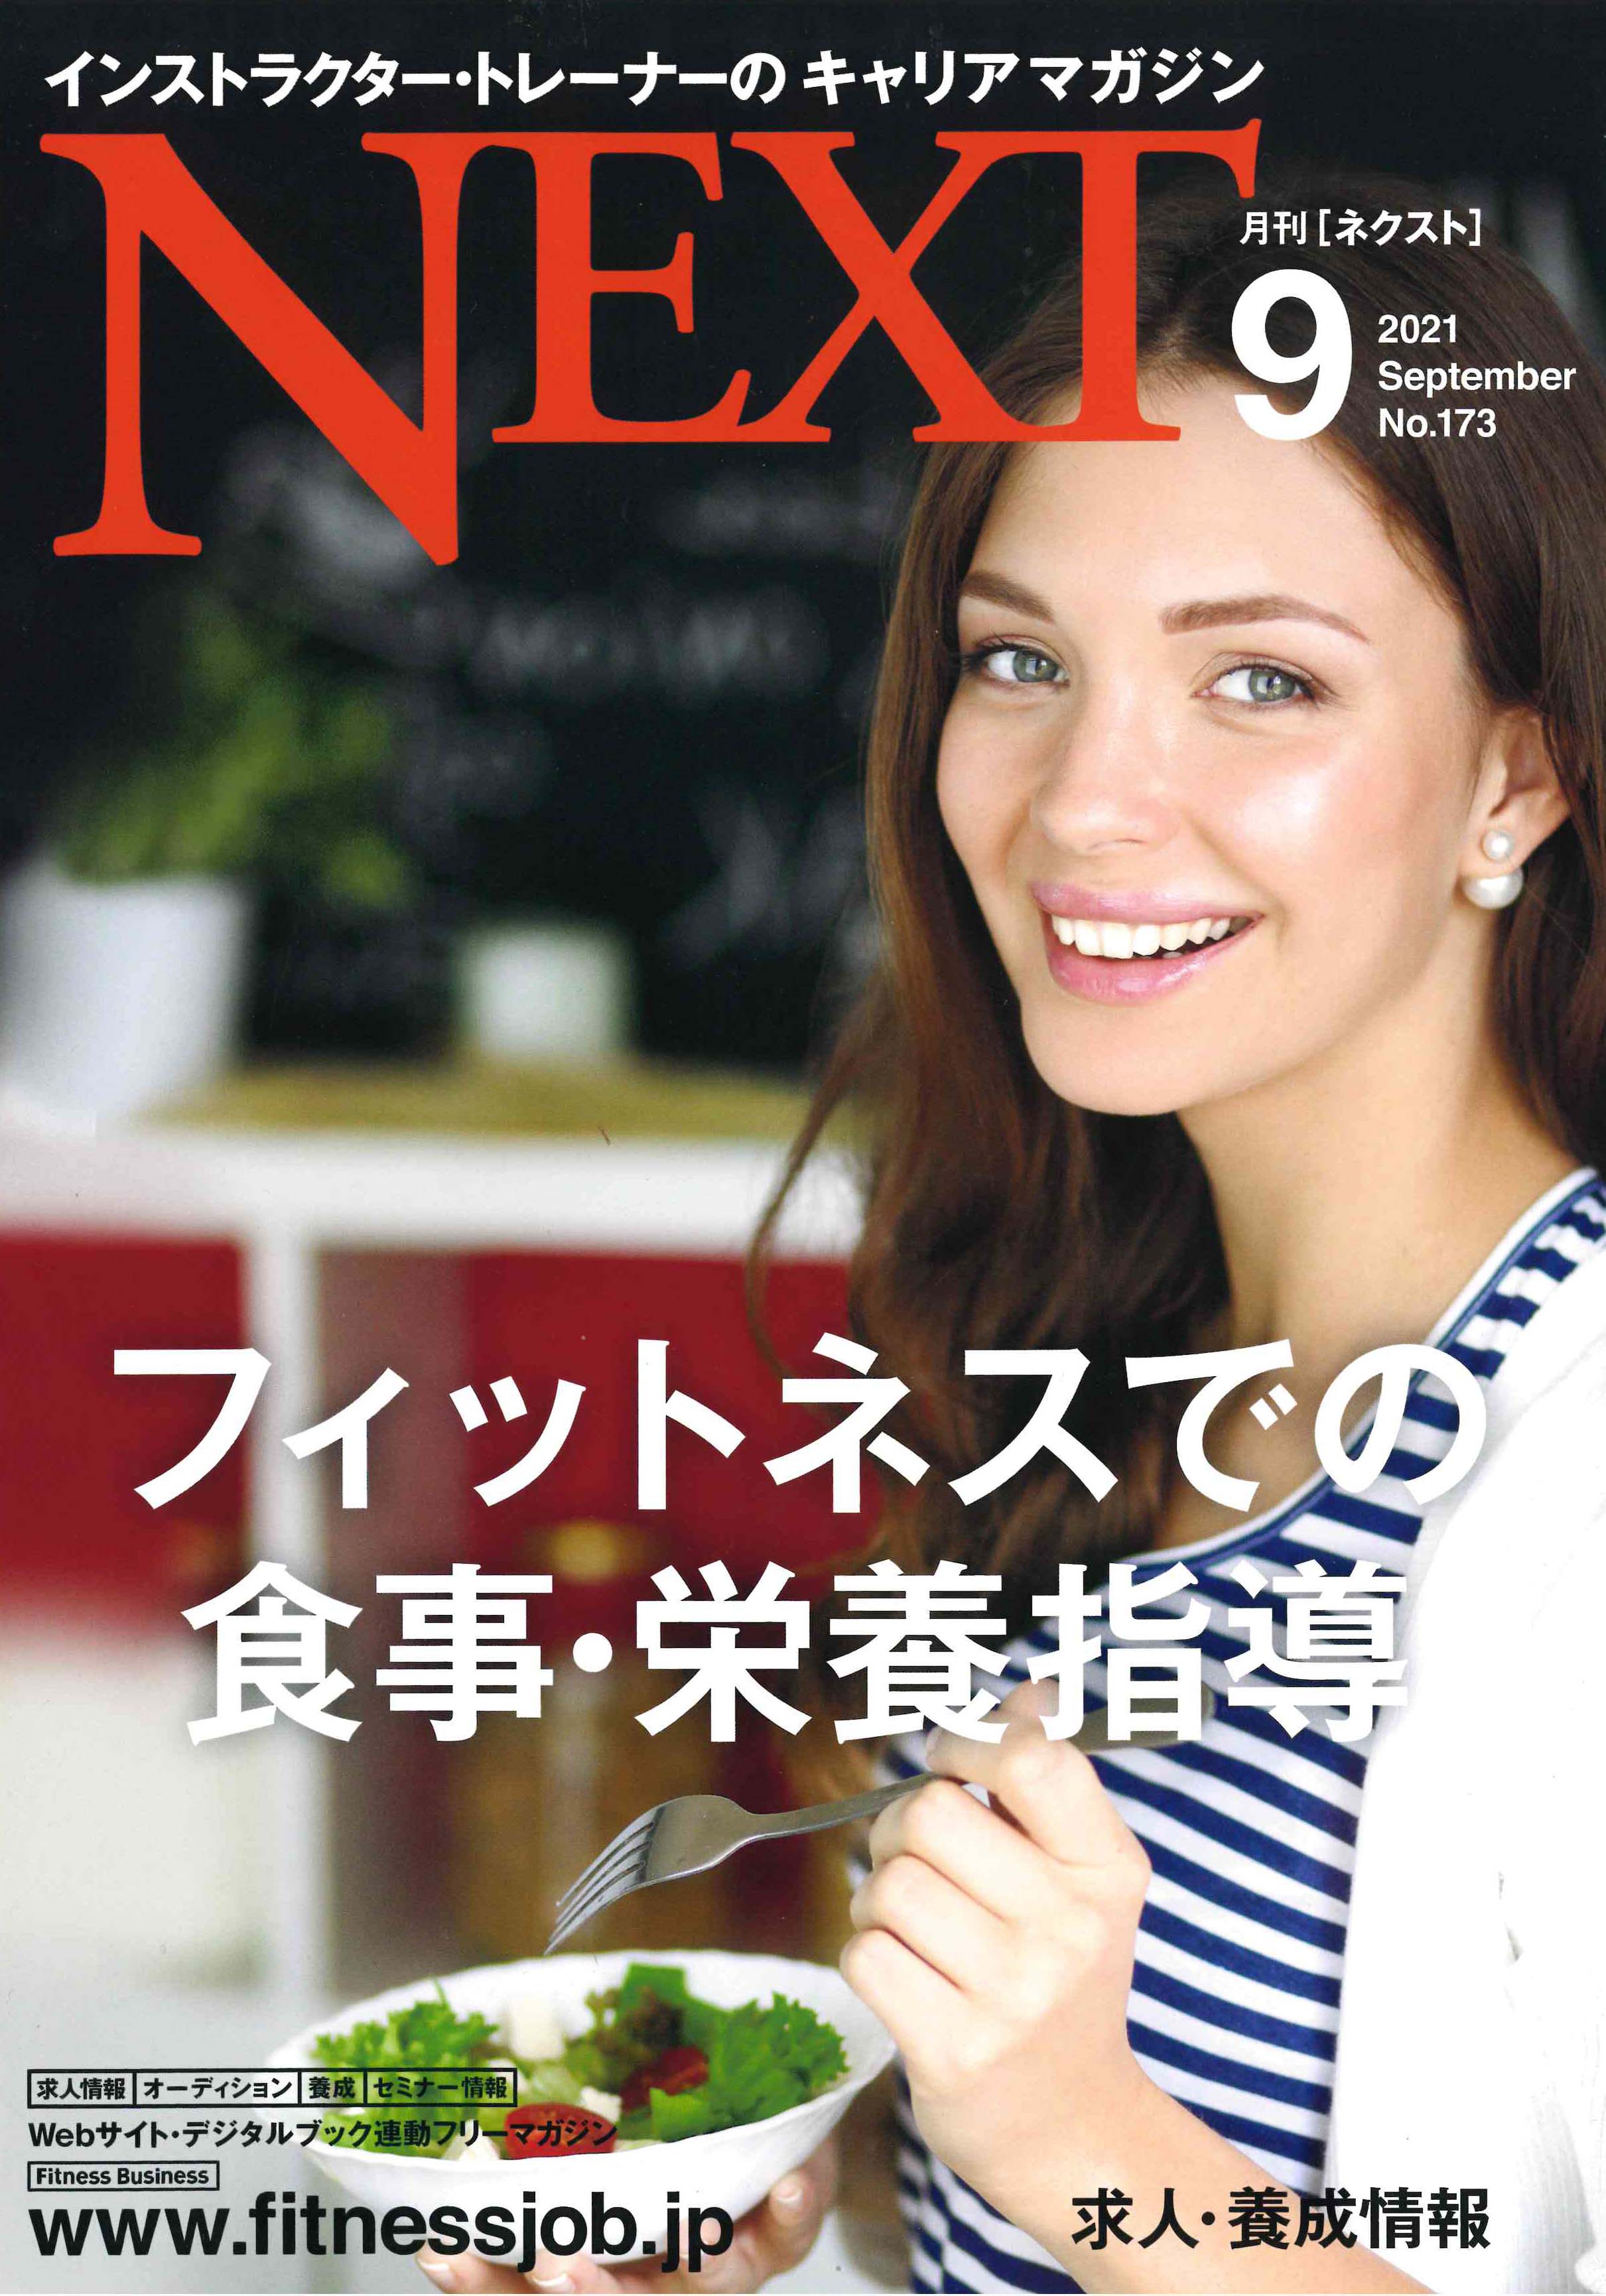 ミラグロAGがインストラクター・トレーナーのキャリアマガジン「月刊ネクスト9」に掲載されました。